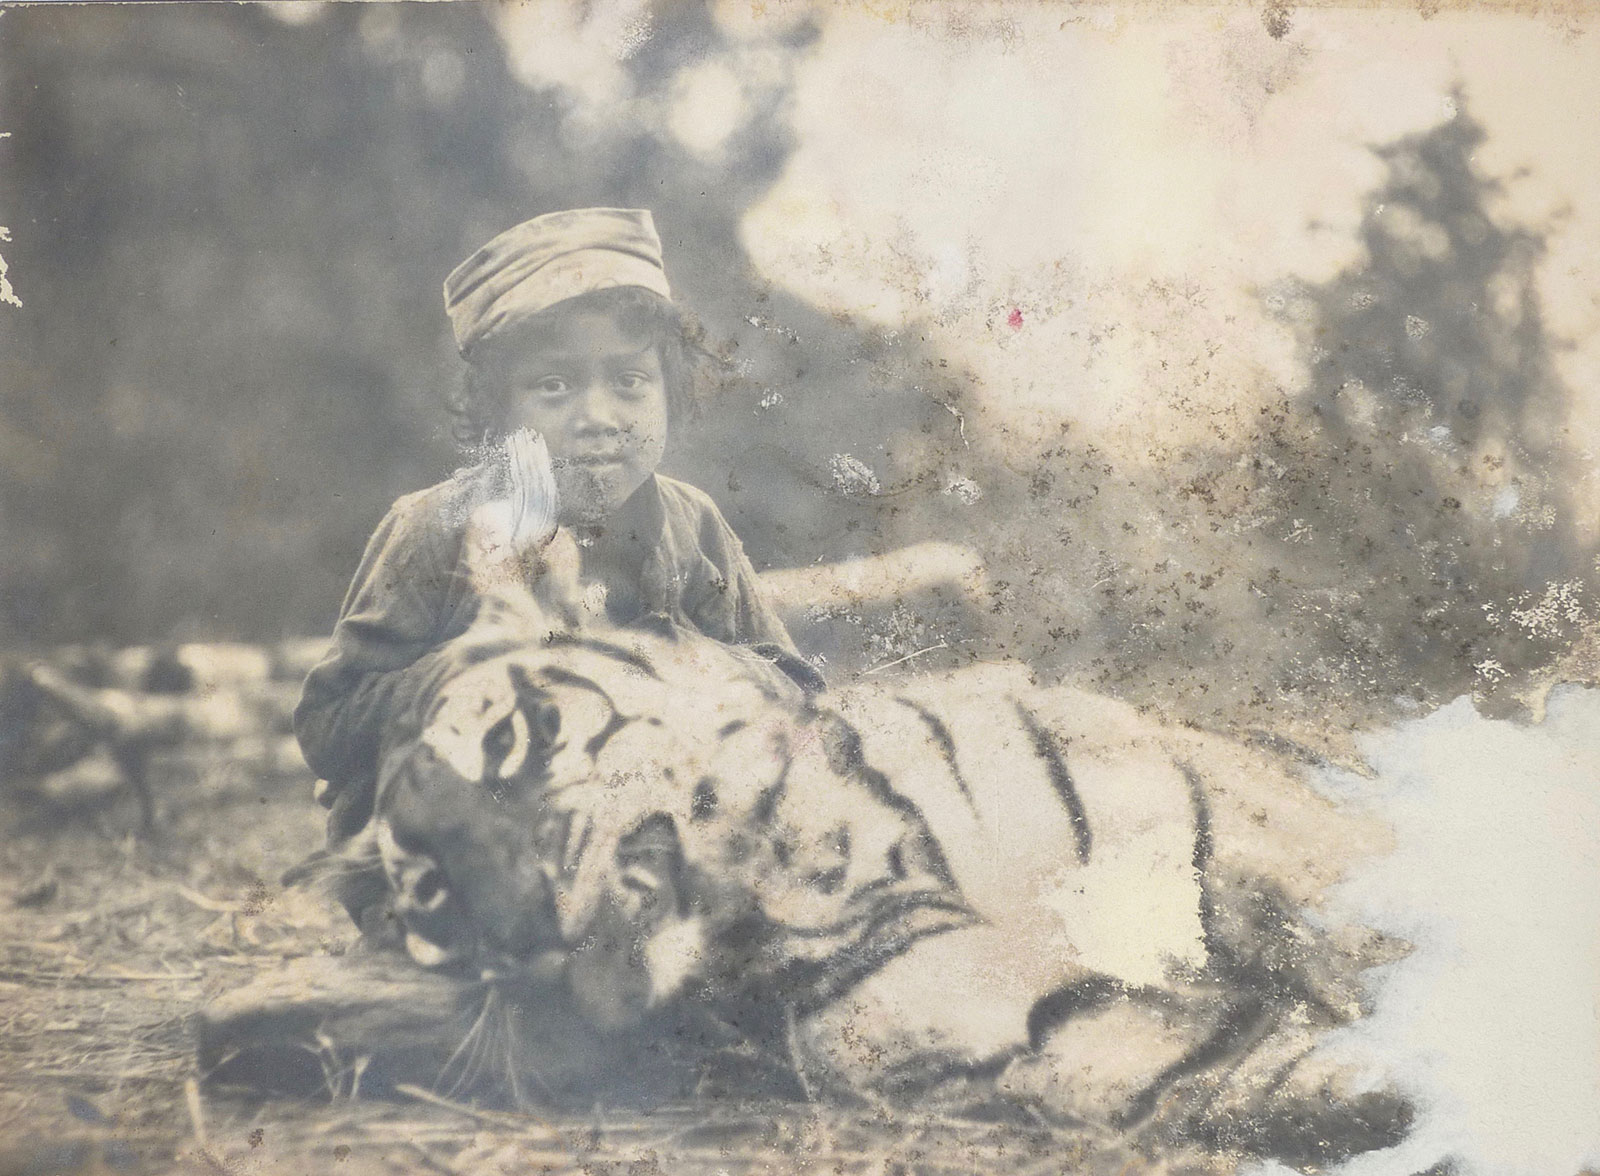 The Talla Des tigress in 1929.